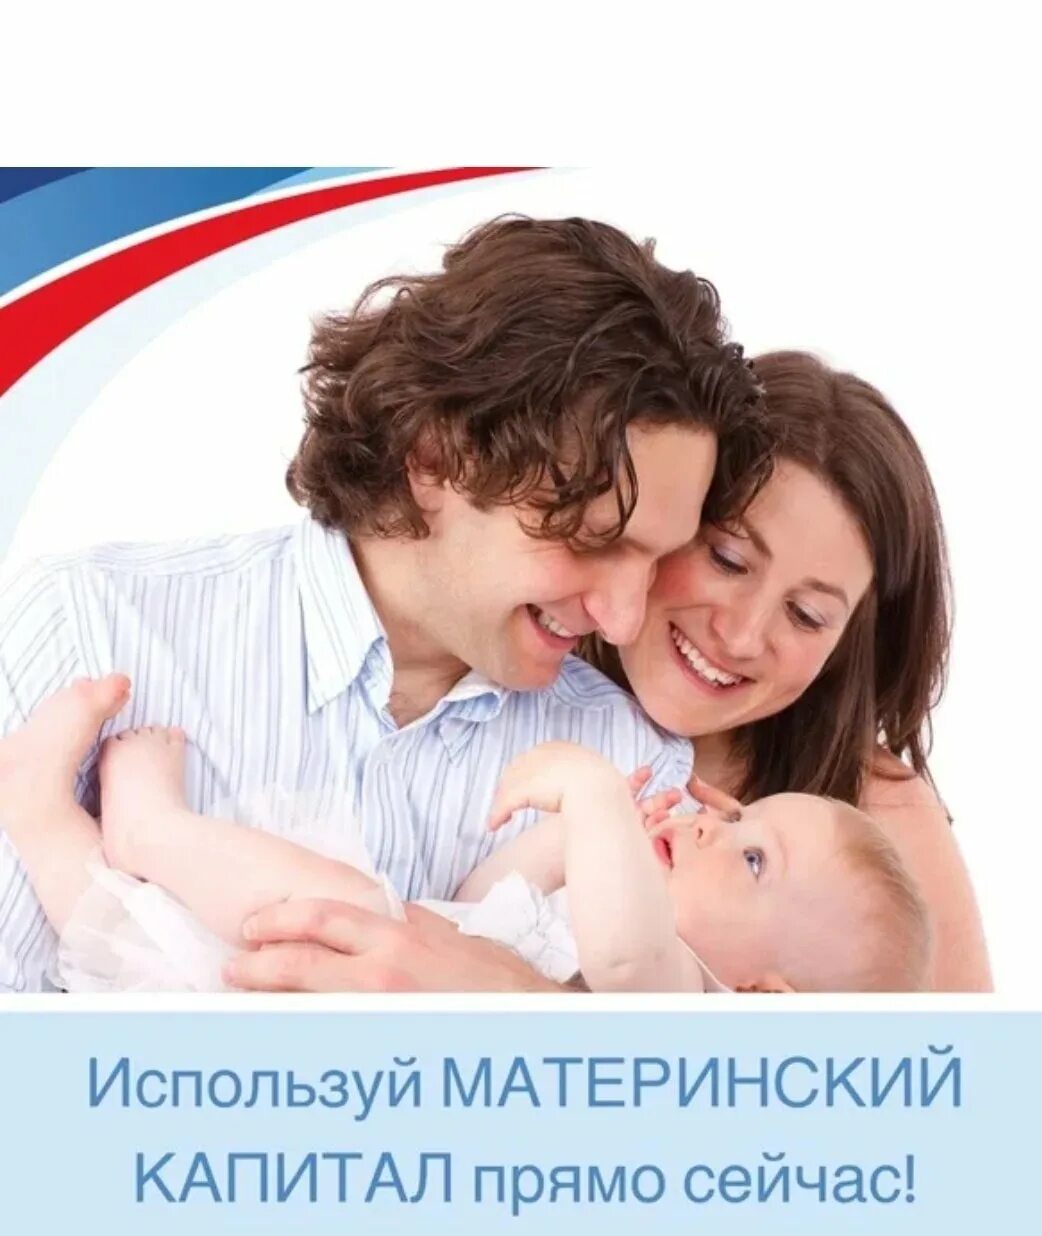 Материнский капитал на третьего ребенка в россии. Материнский капитал. Семья материнский капитал. Материнский семейный капитал. Семья с детьми материнский капитал.